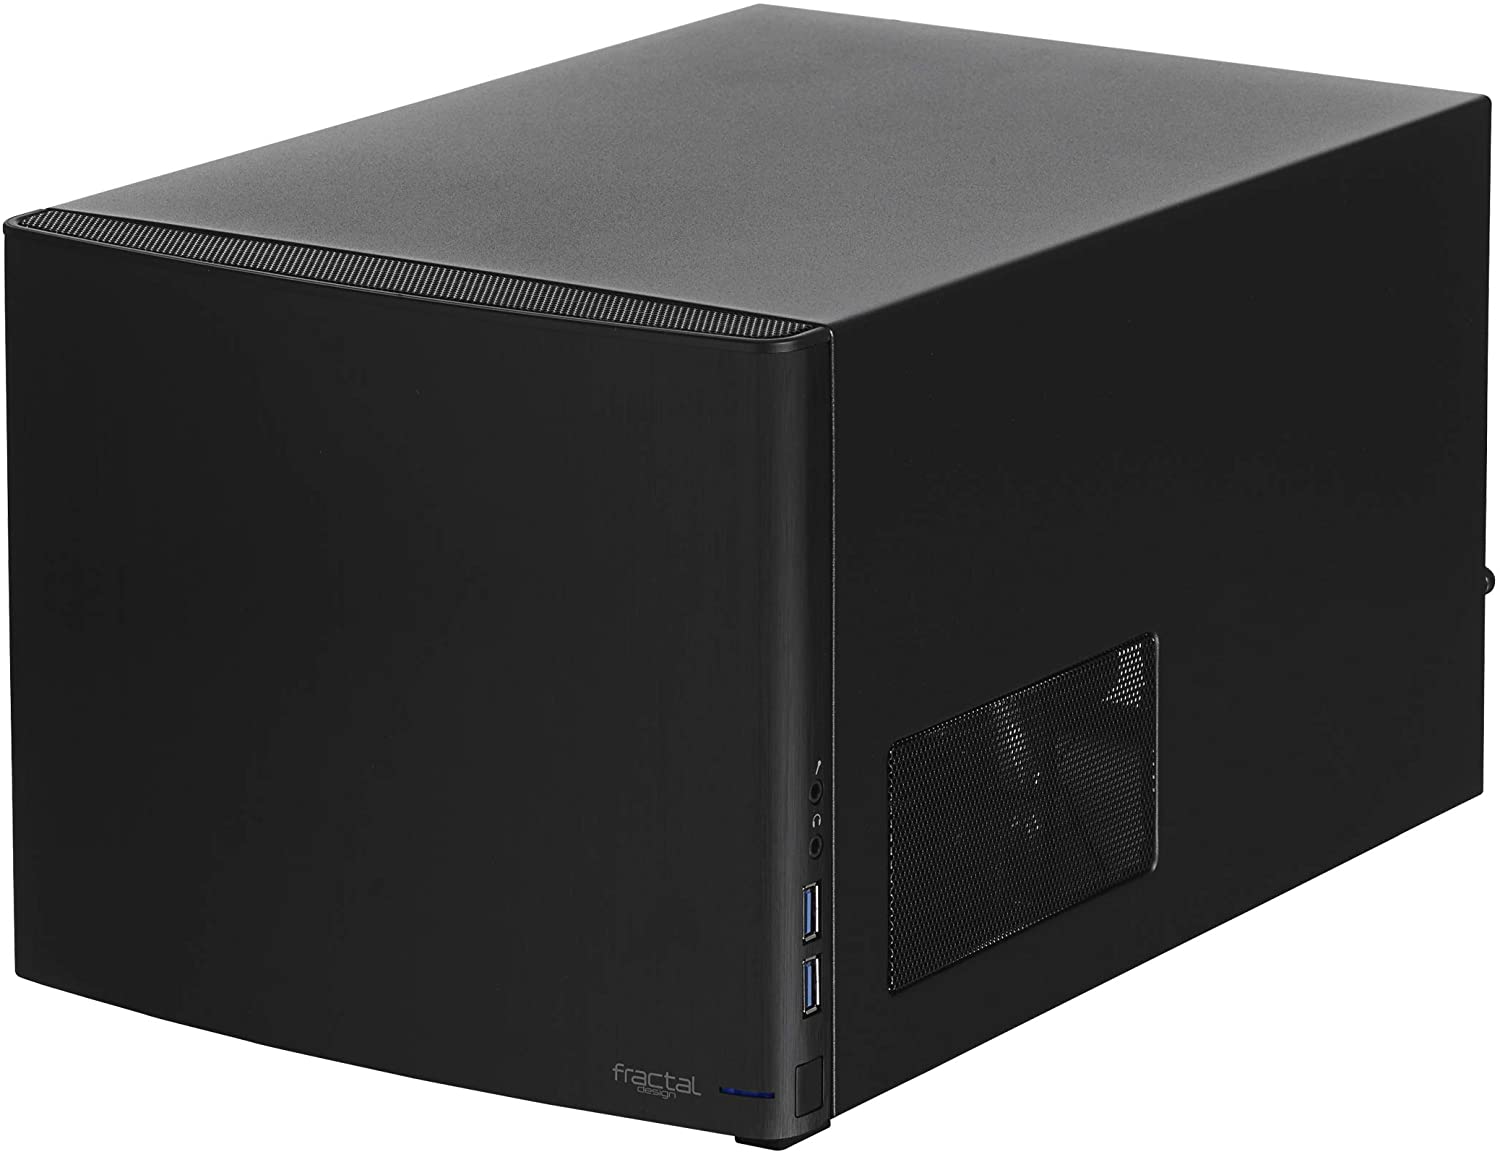 Fractal Design Node 304 Black 2 slots Mini ITX Mini DTX FD-CA-NODE-304-BL  Cube Desktop Case